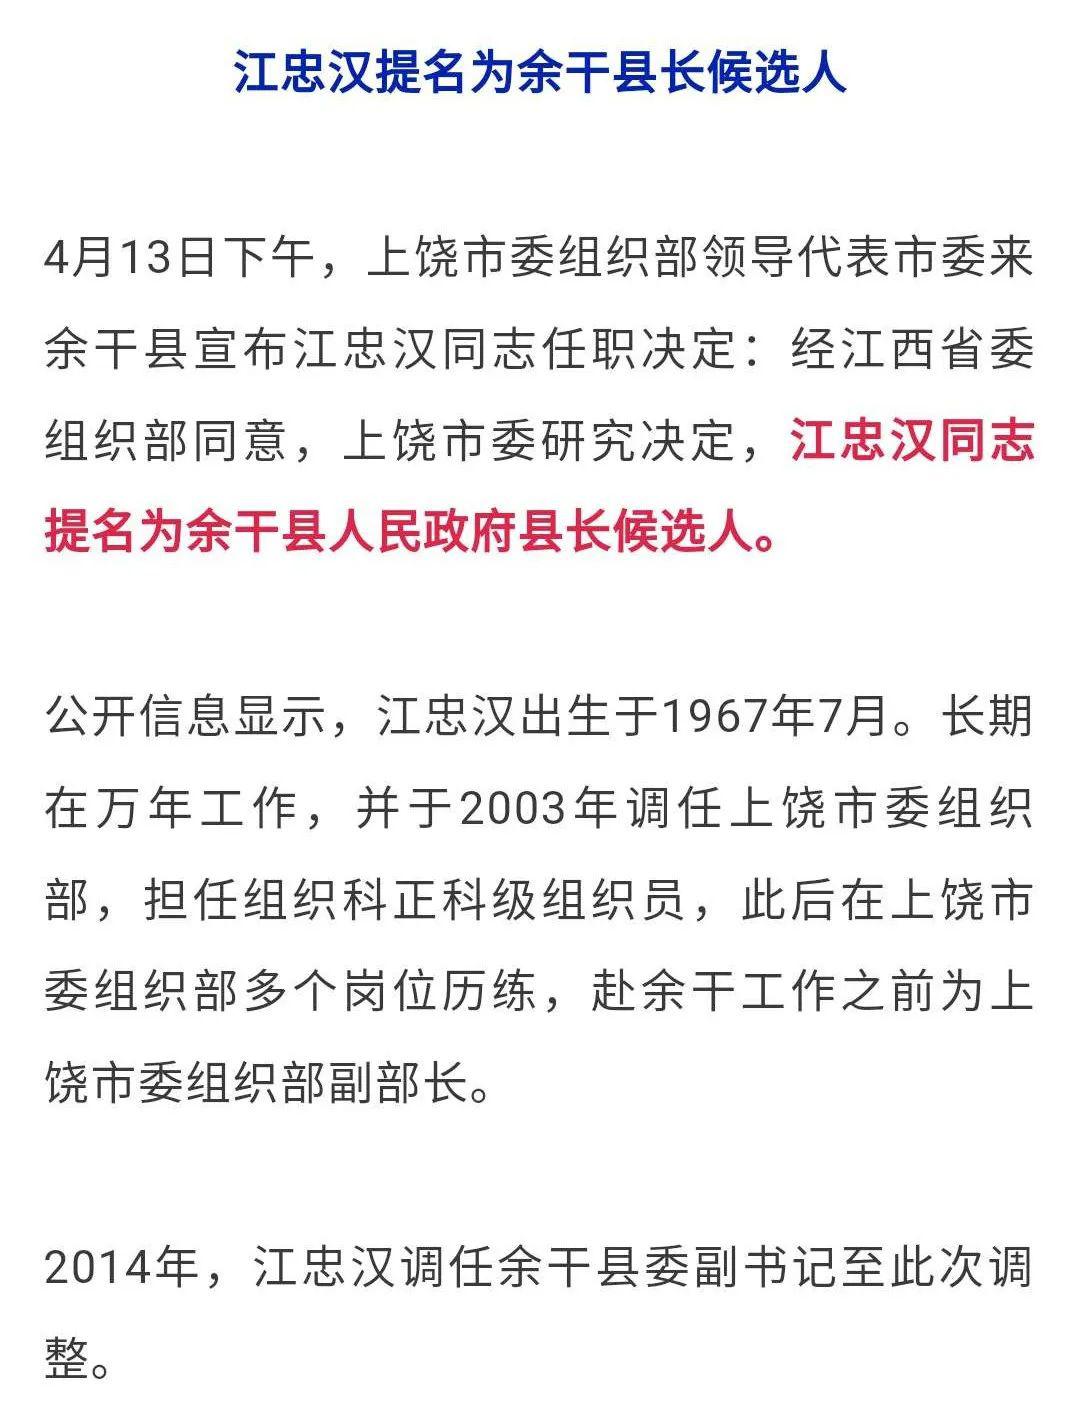 毛江虎提名为安福县政府县长候选人